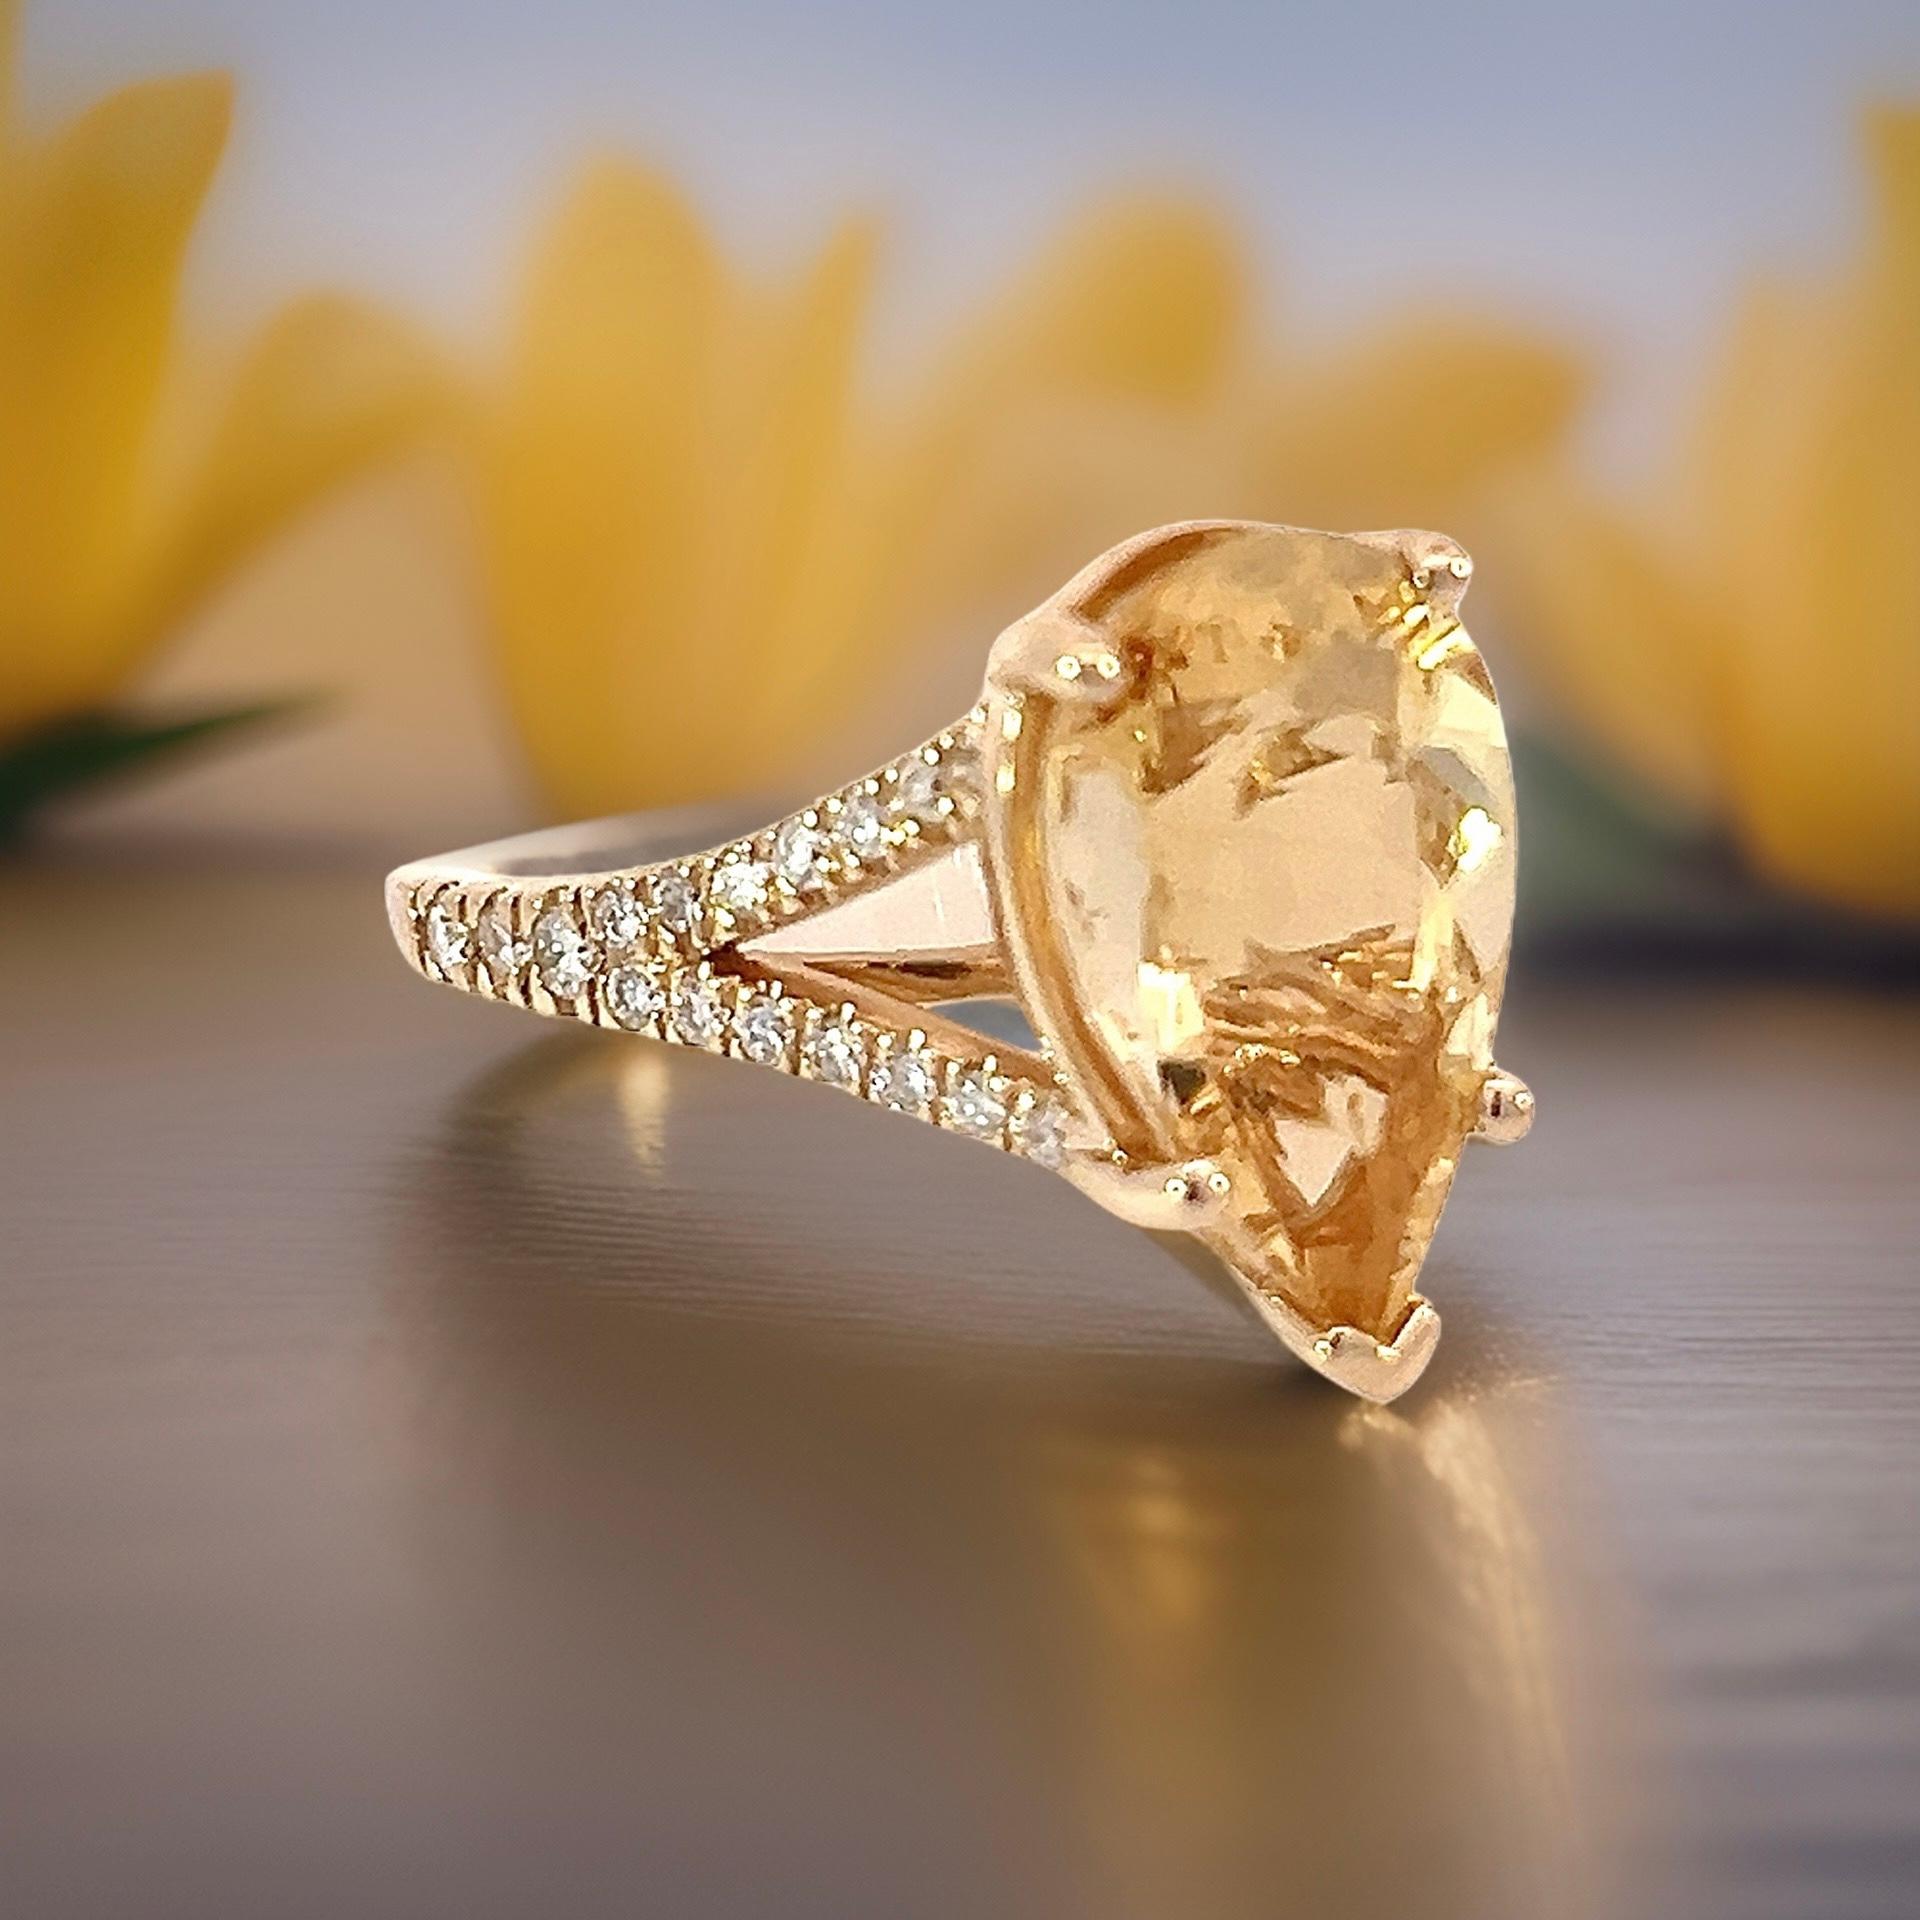 Natürliche Citrin Diamant-Ring 6,5 14k Y Gold 4,79 TCW zertifiziert $3.950 310632

Dies ist ein einzigartiges, maßgeschneidertes, glamouröses Schmuckstück!

Nichts sagt mehr 